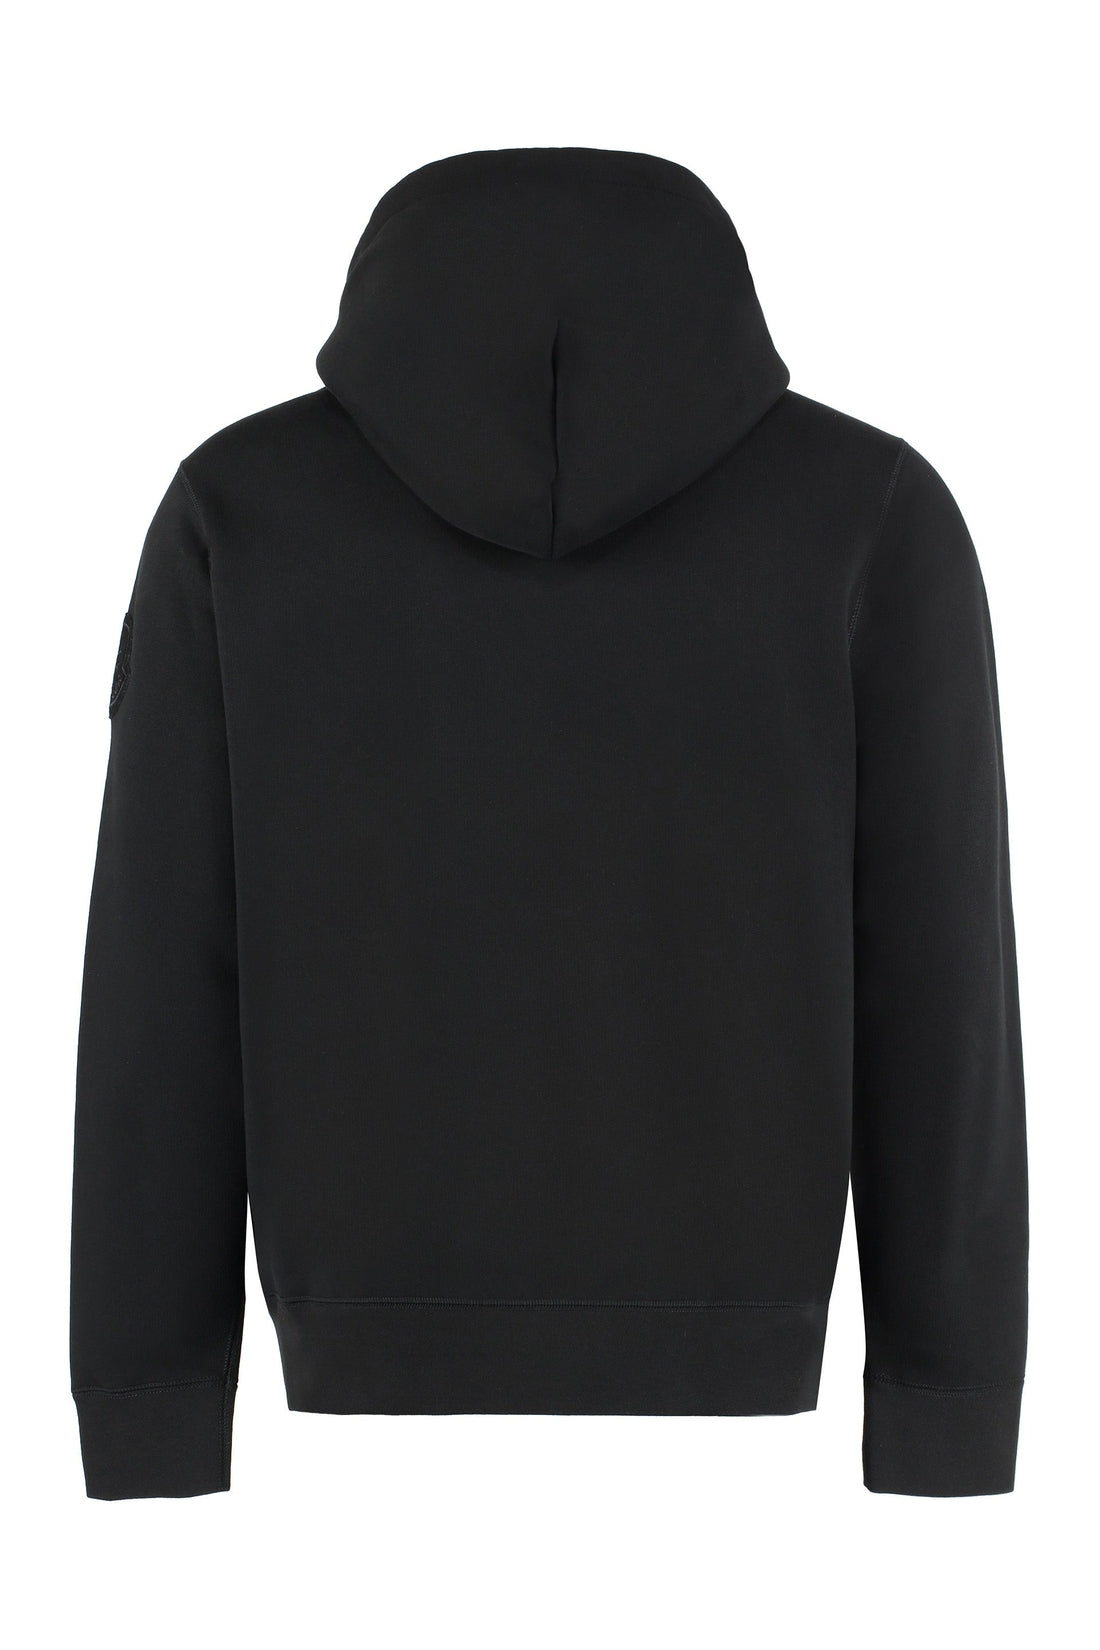 Moncler Genius-OUTLET-SALE-2 Moncler 1952 - Hooded sweatshirt-ARCHIVIST